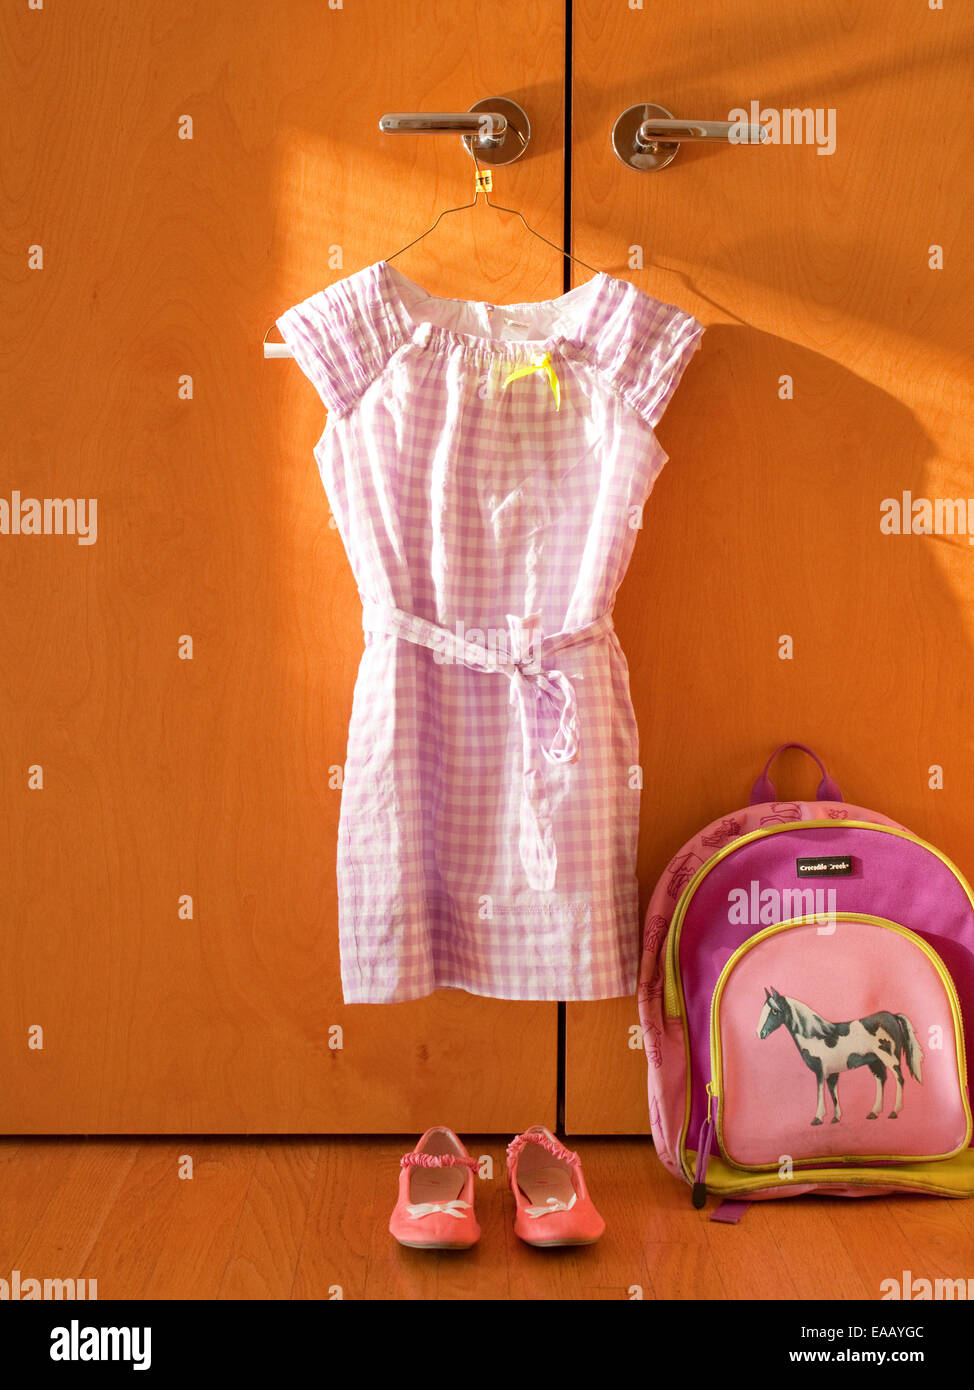 Preparar la ropa para el primer día de escuela Foto de stock